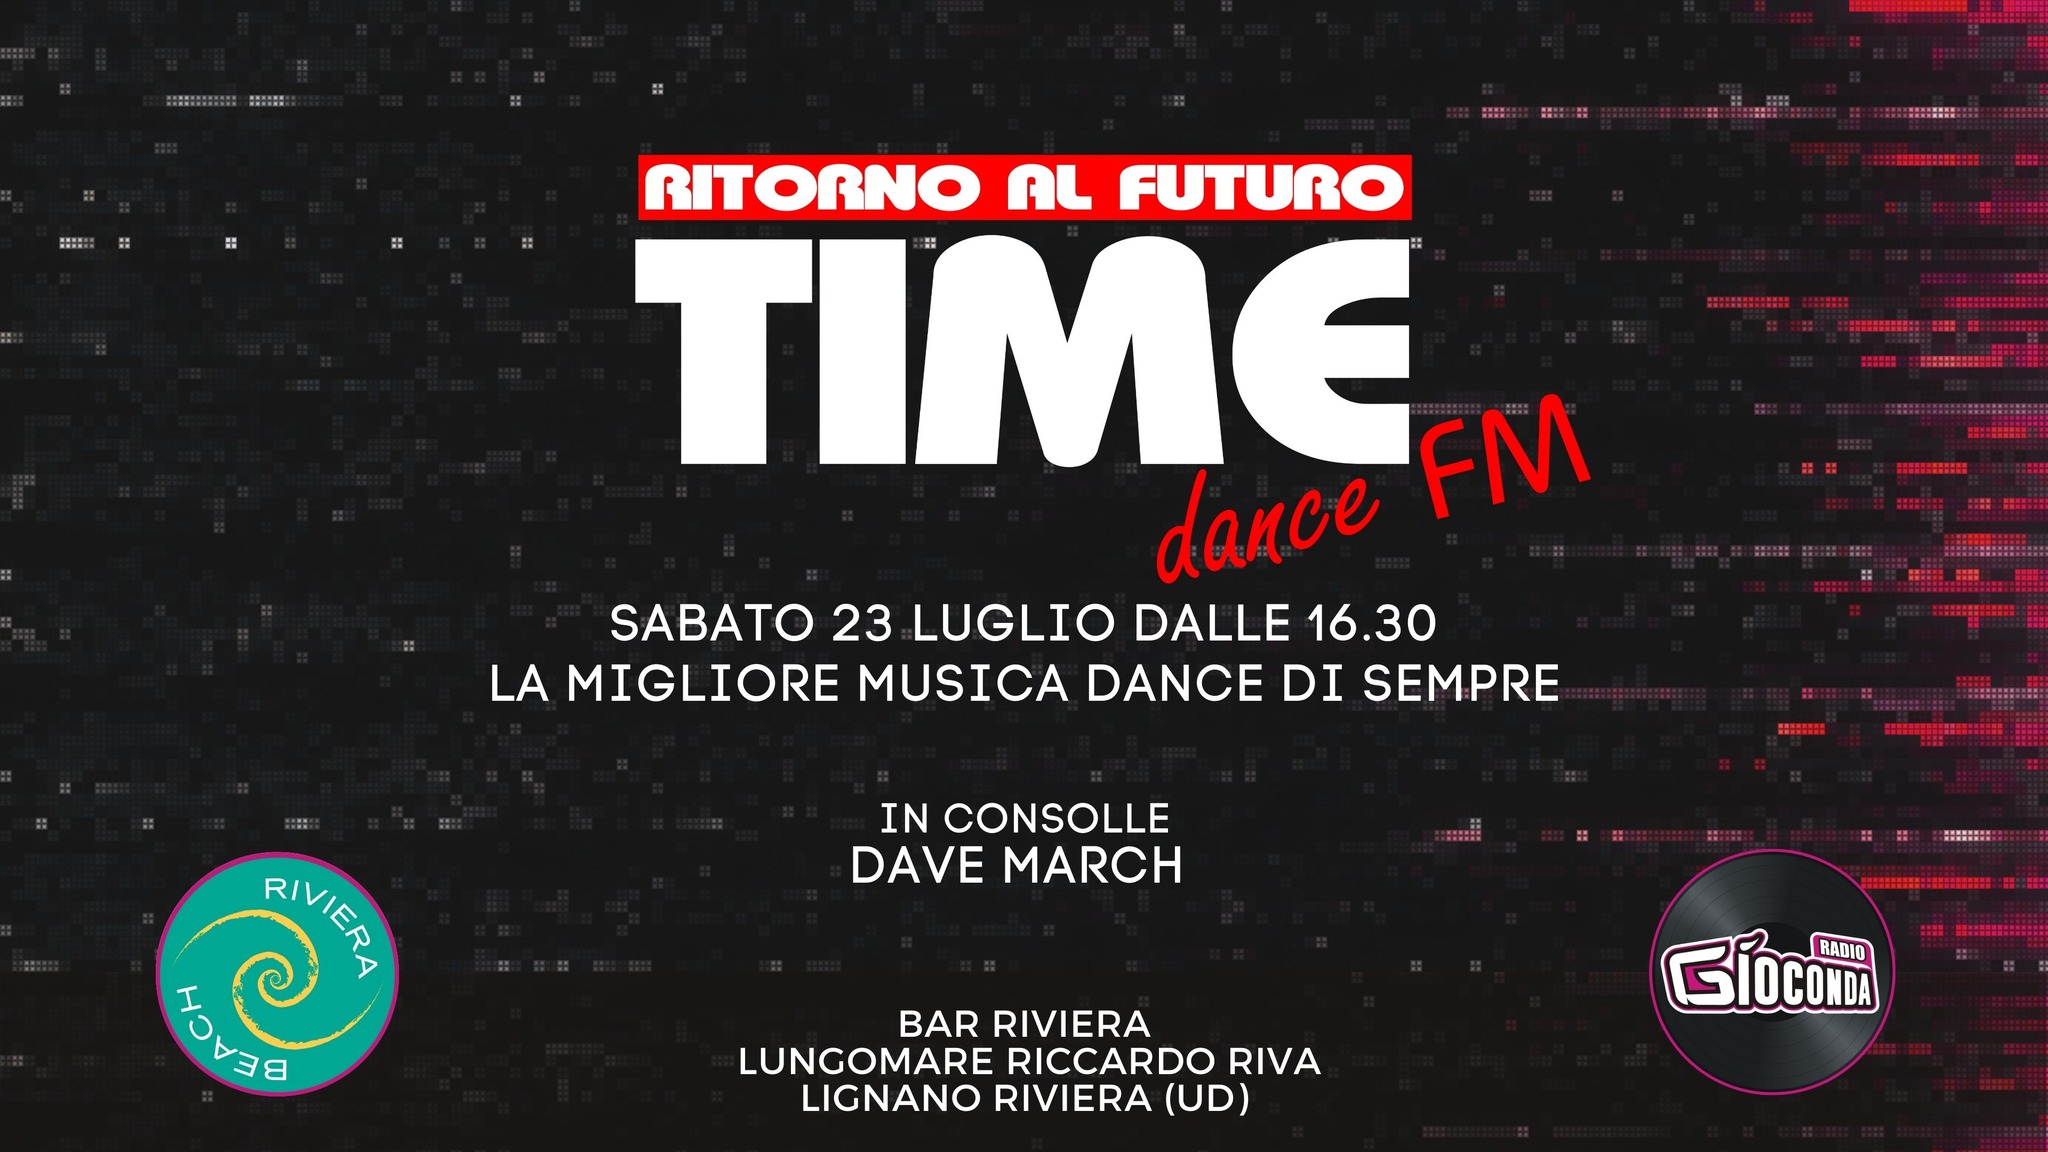 Time dance fm – Ritorno al Futuro, Bar Riviera (Bagno 2), Lignano Riviera